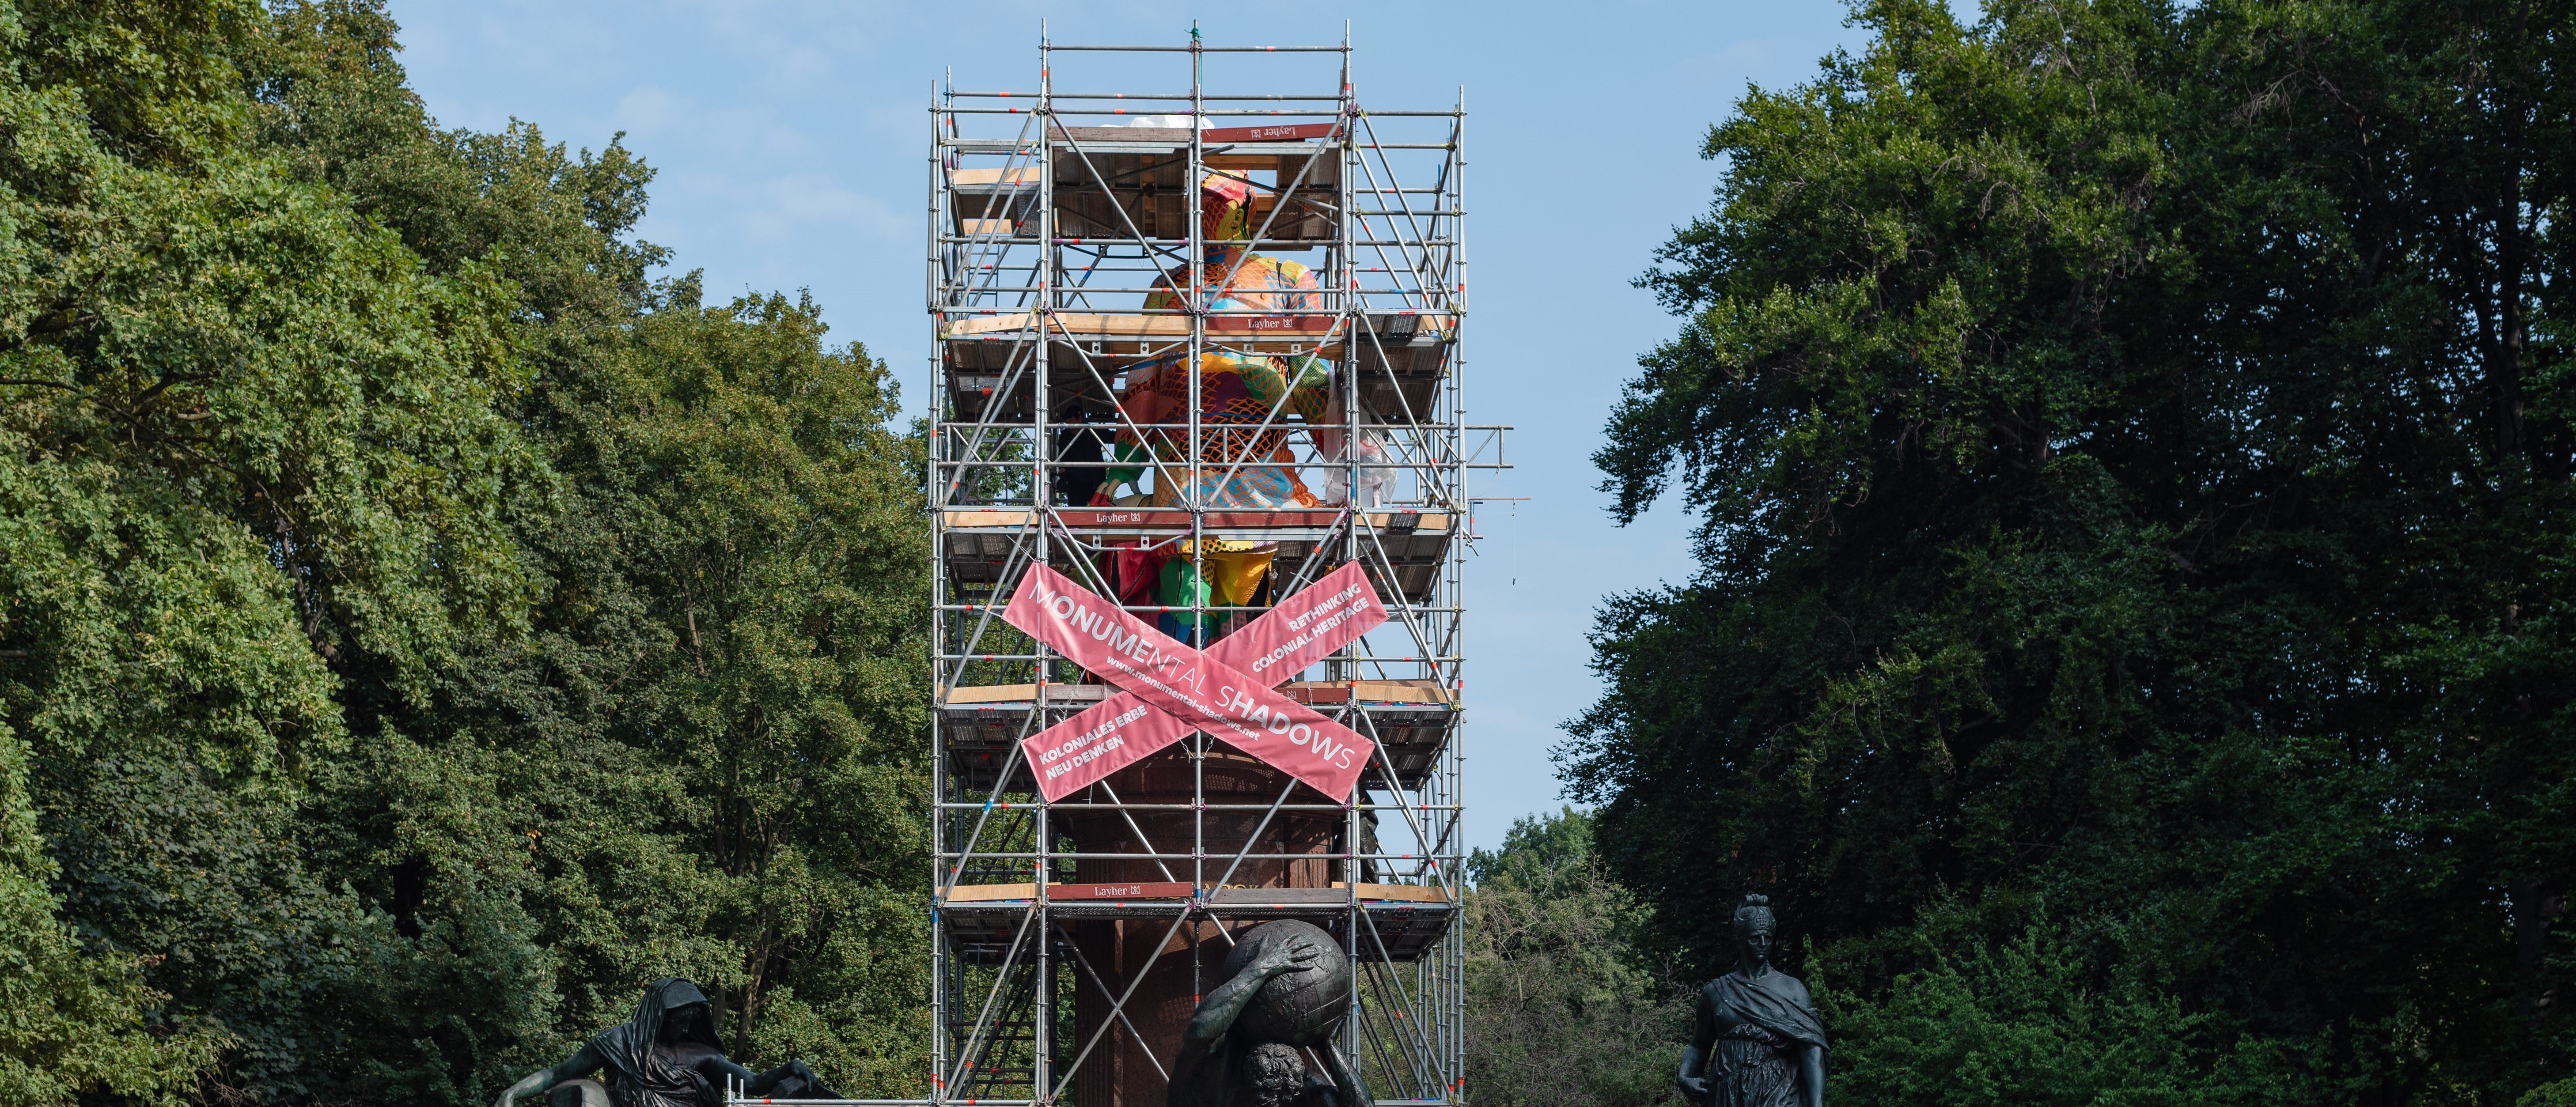 Das Bismarck-Denkmal in Berlin Tiergarten. Ein Baugerüst hüllt die Statue ein. Auf dem Gerüst sind zwei rosa Banner überkreuzt gehängt, auf denen in weißer Schrift "Monumental Shadows" steht. Die Statue ist zum Teil mit buntem Pappmaché eingehüllt.